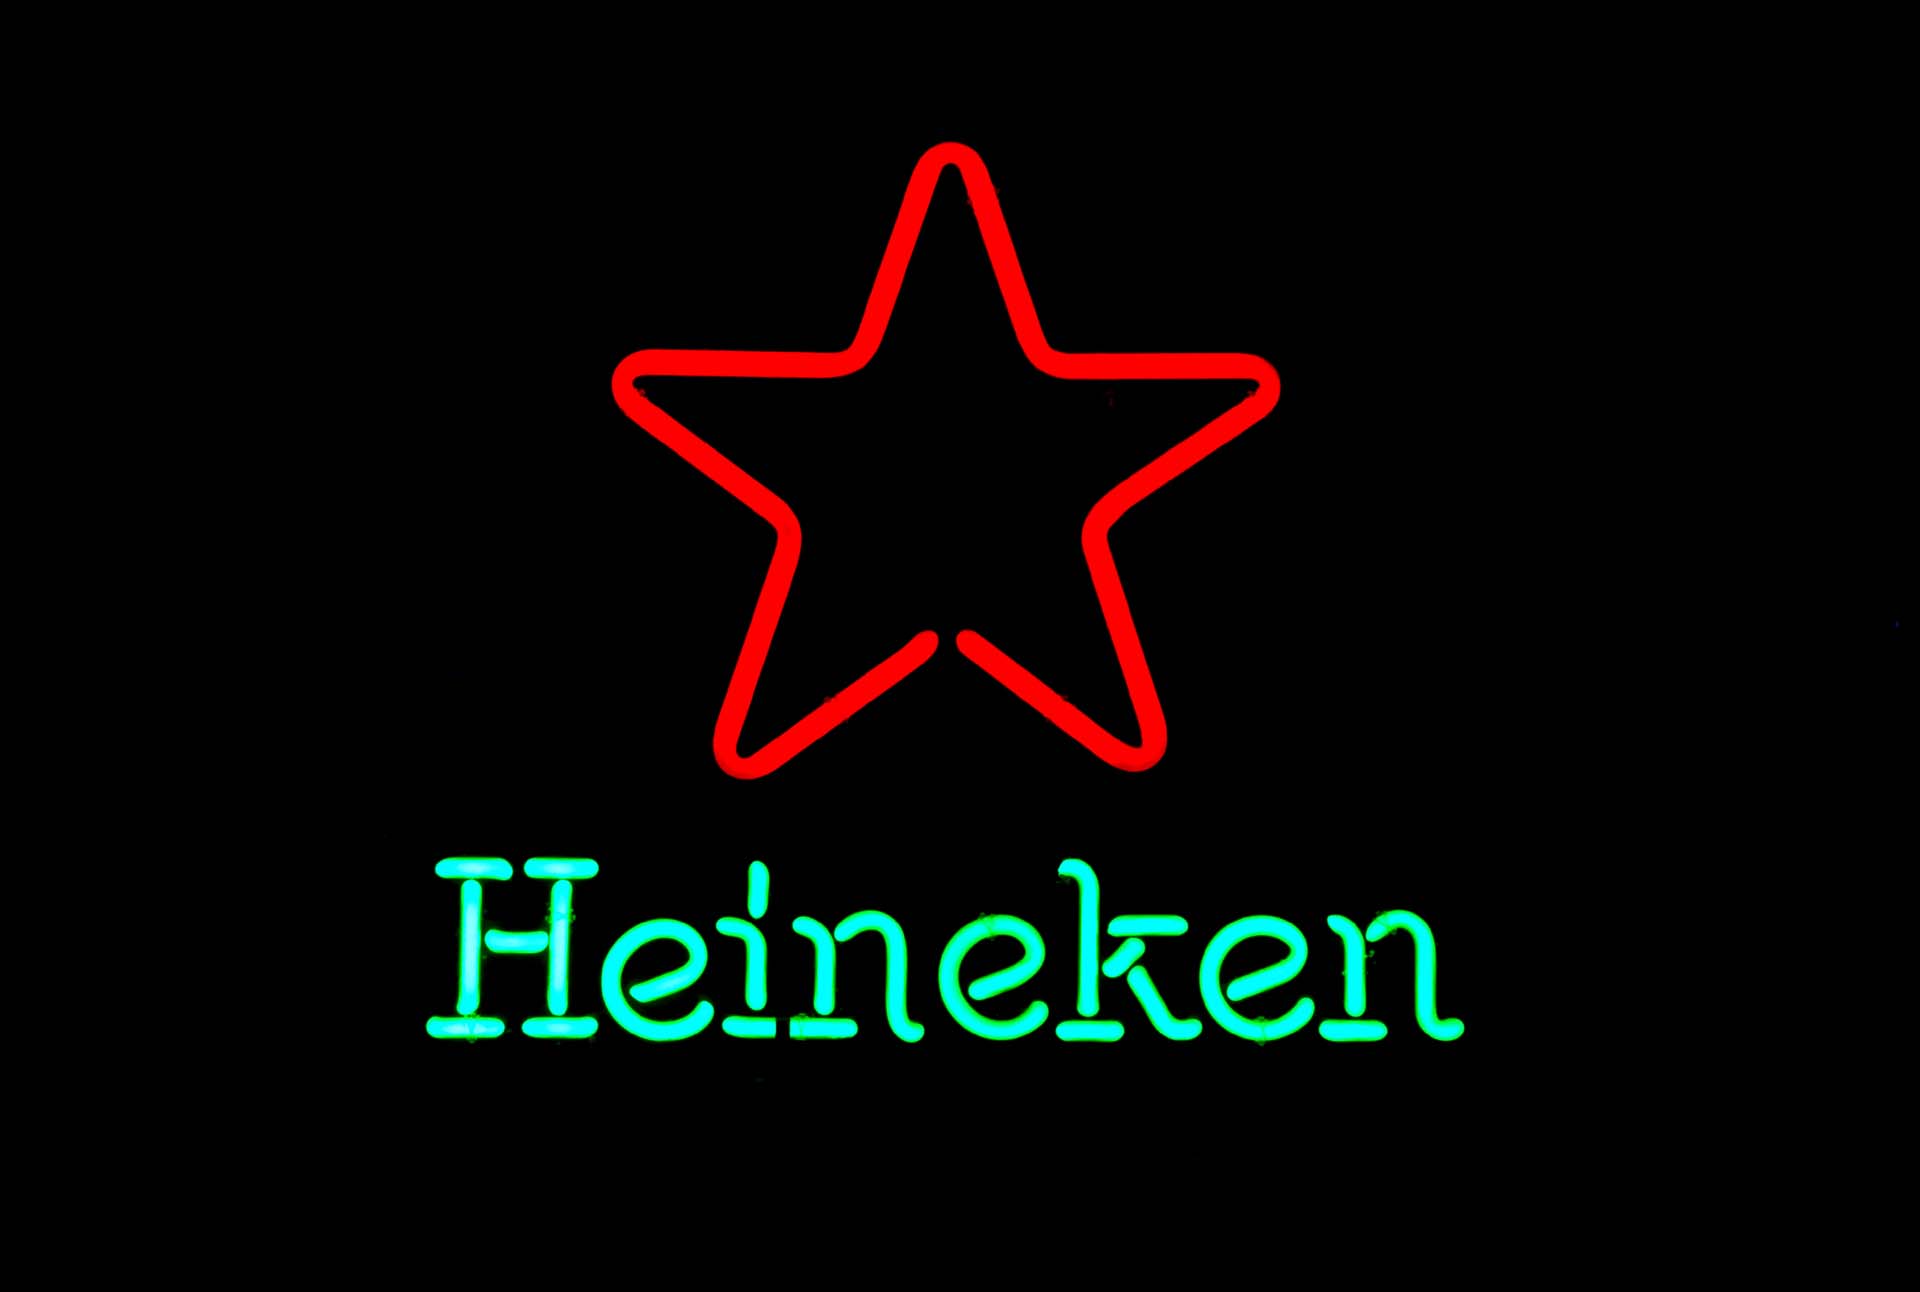 Heineken Red Star